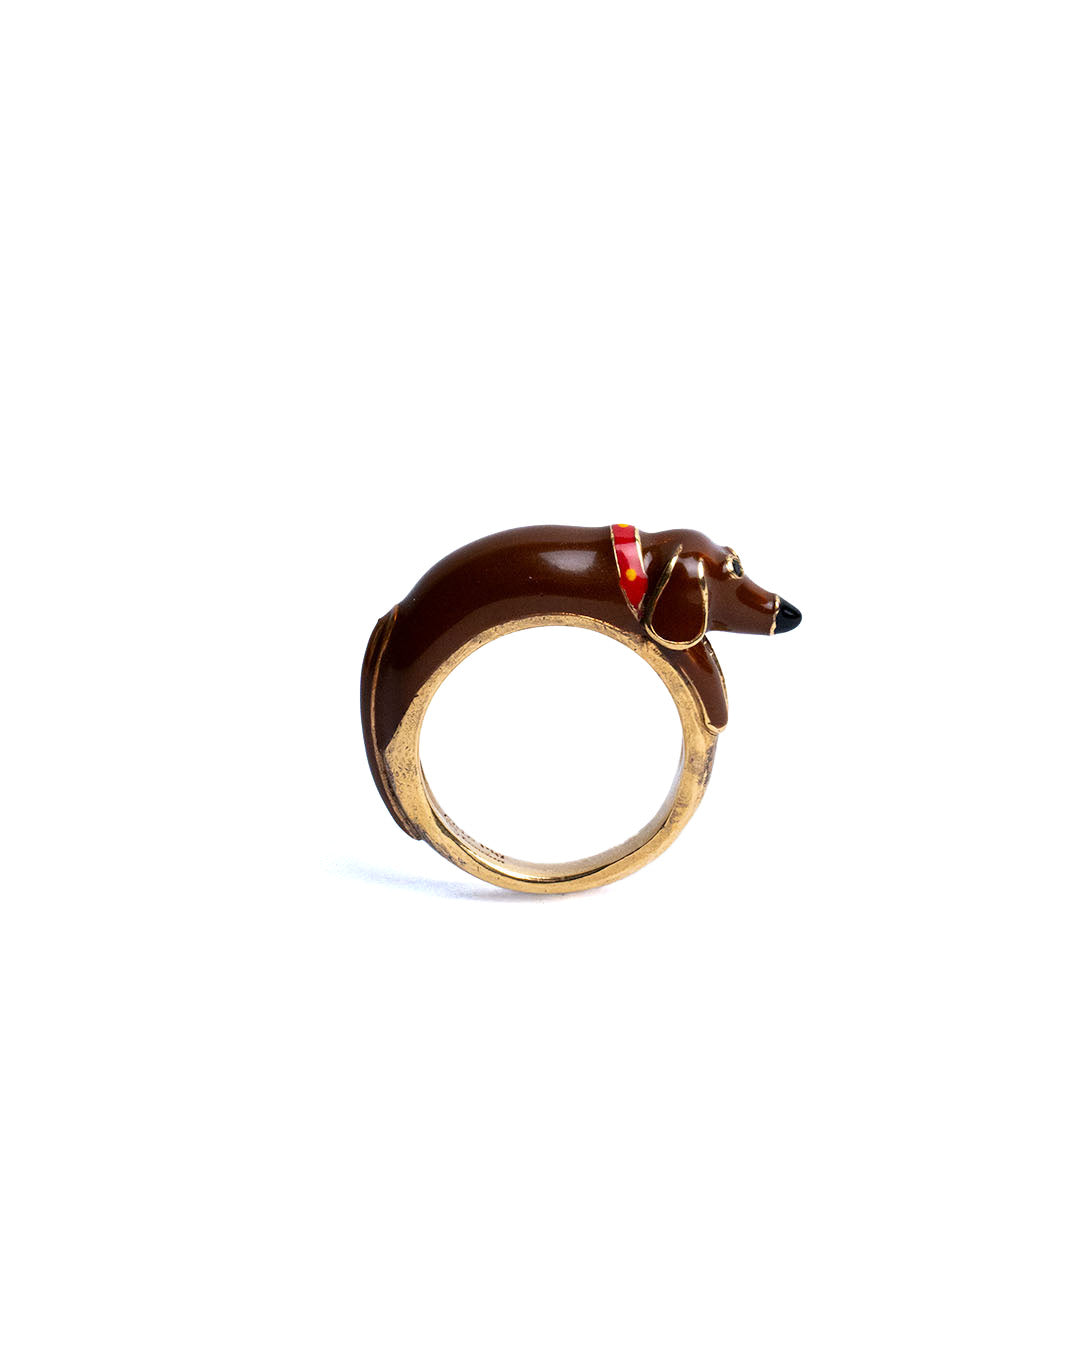 Ugo Sausage Ring - Chic Pig